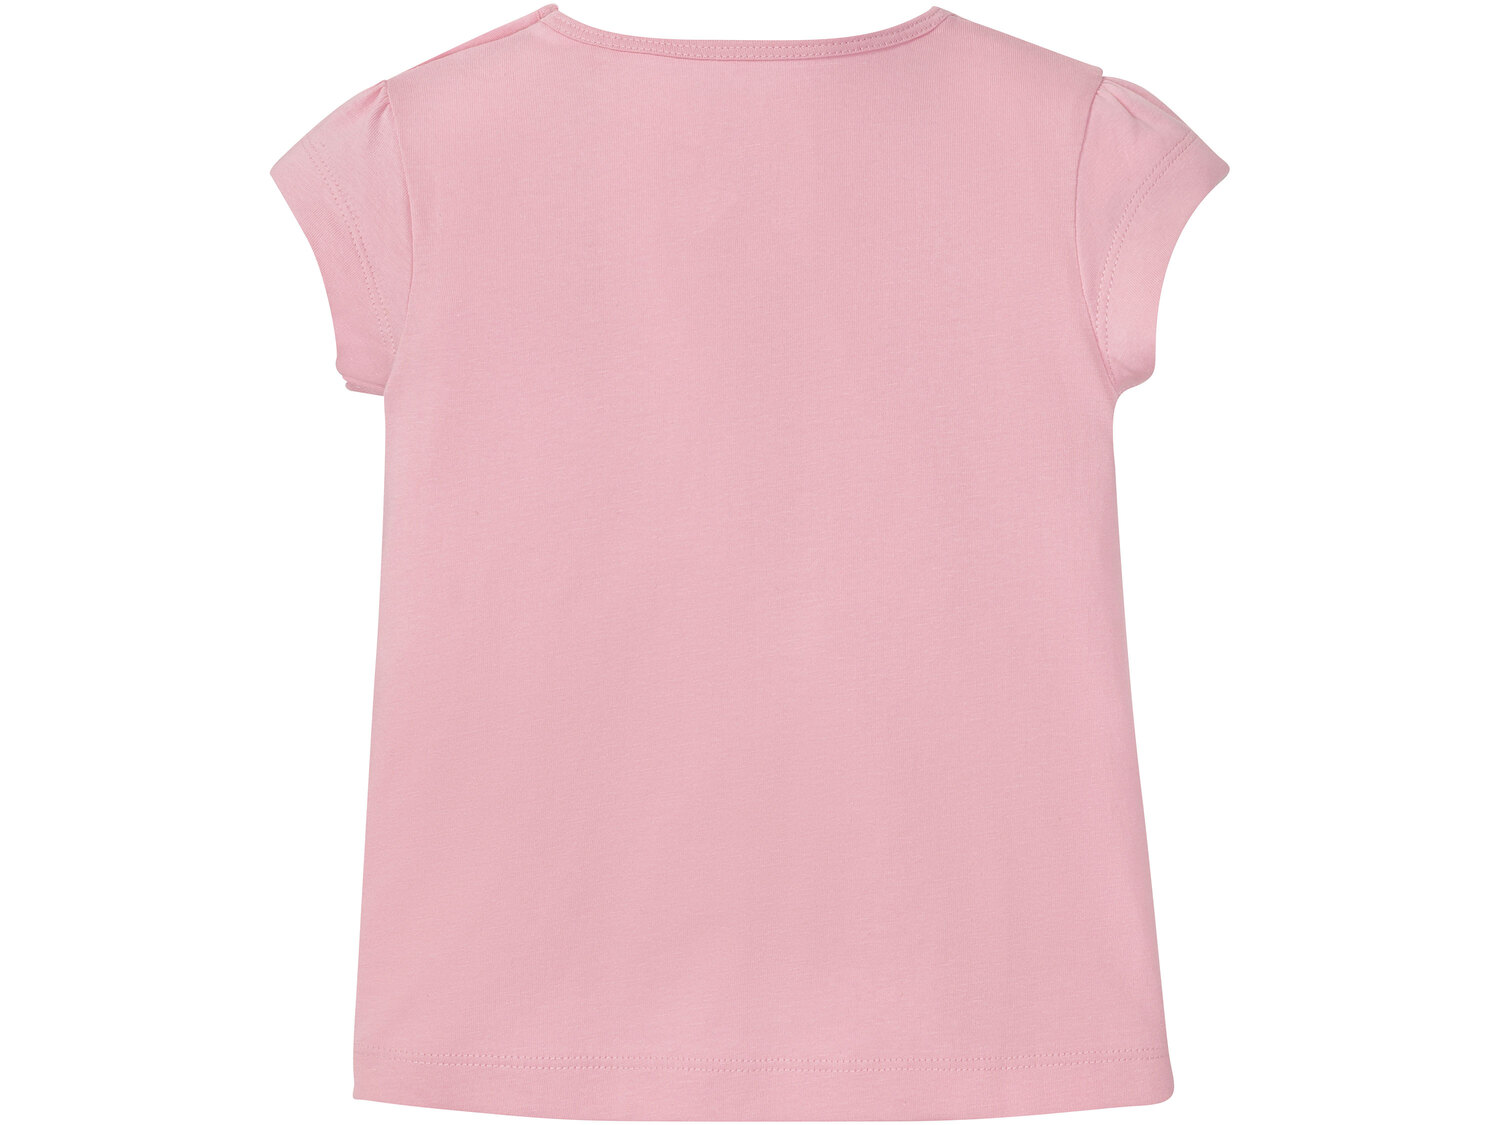 T-shirt dziewczęcy z licencją , cena 9,99 PLN 
- rozmiary: 86-116
- 100% bawełny
Dostępne ...